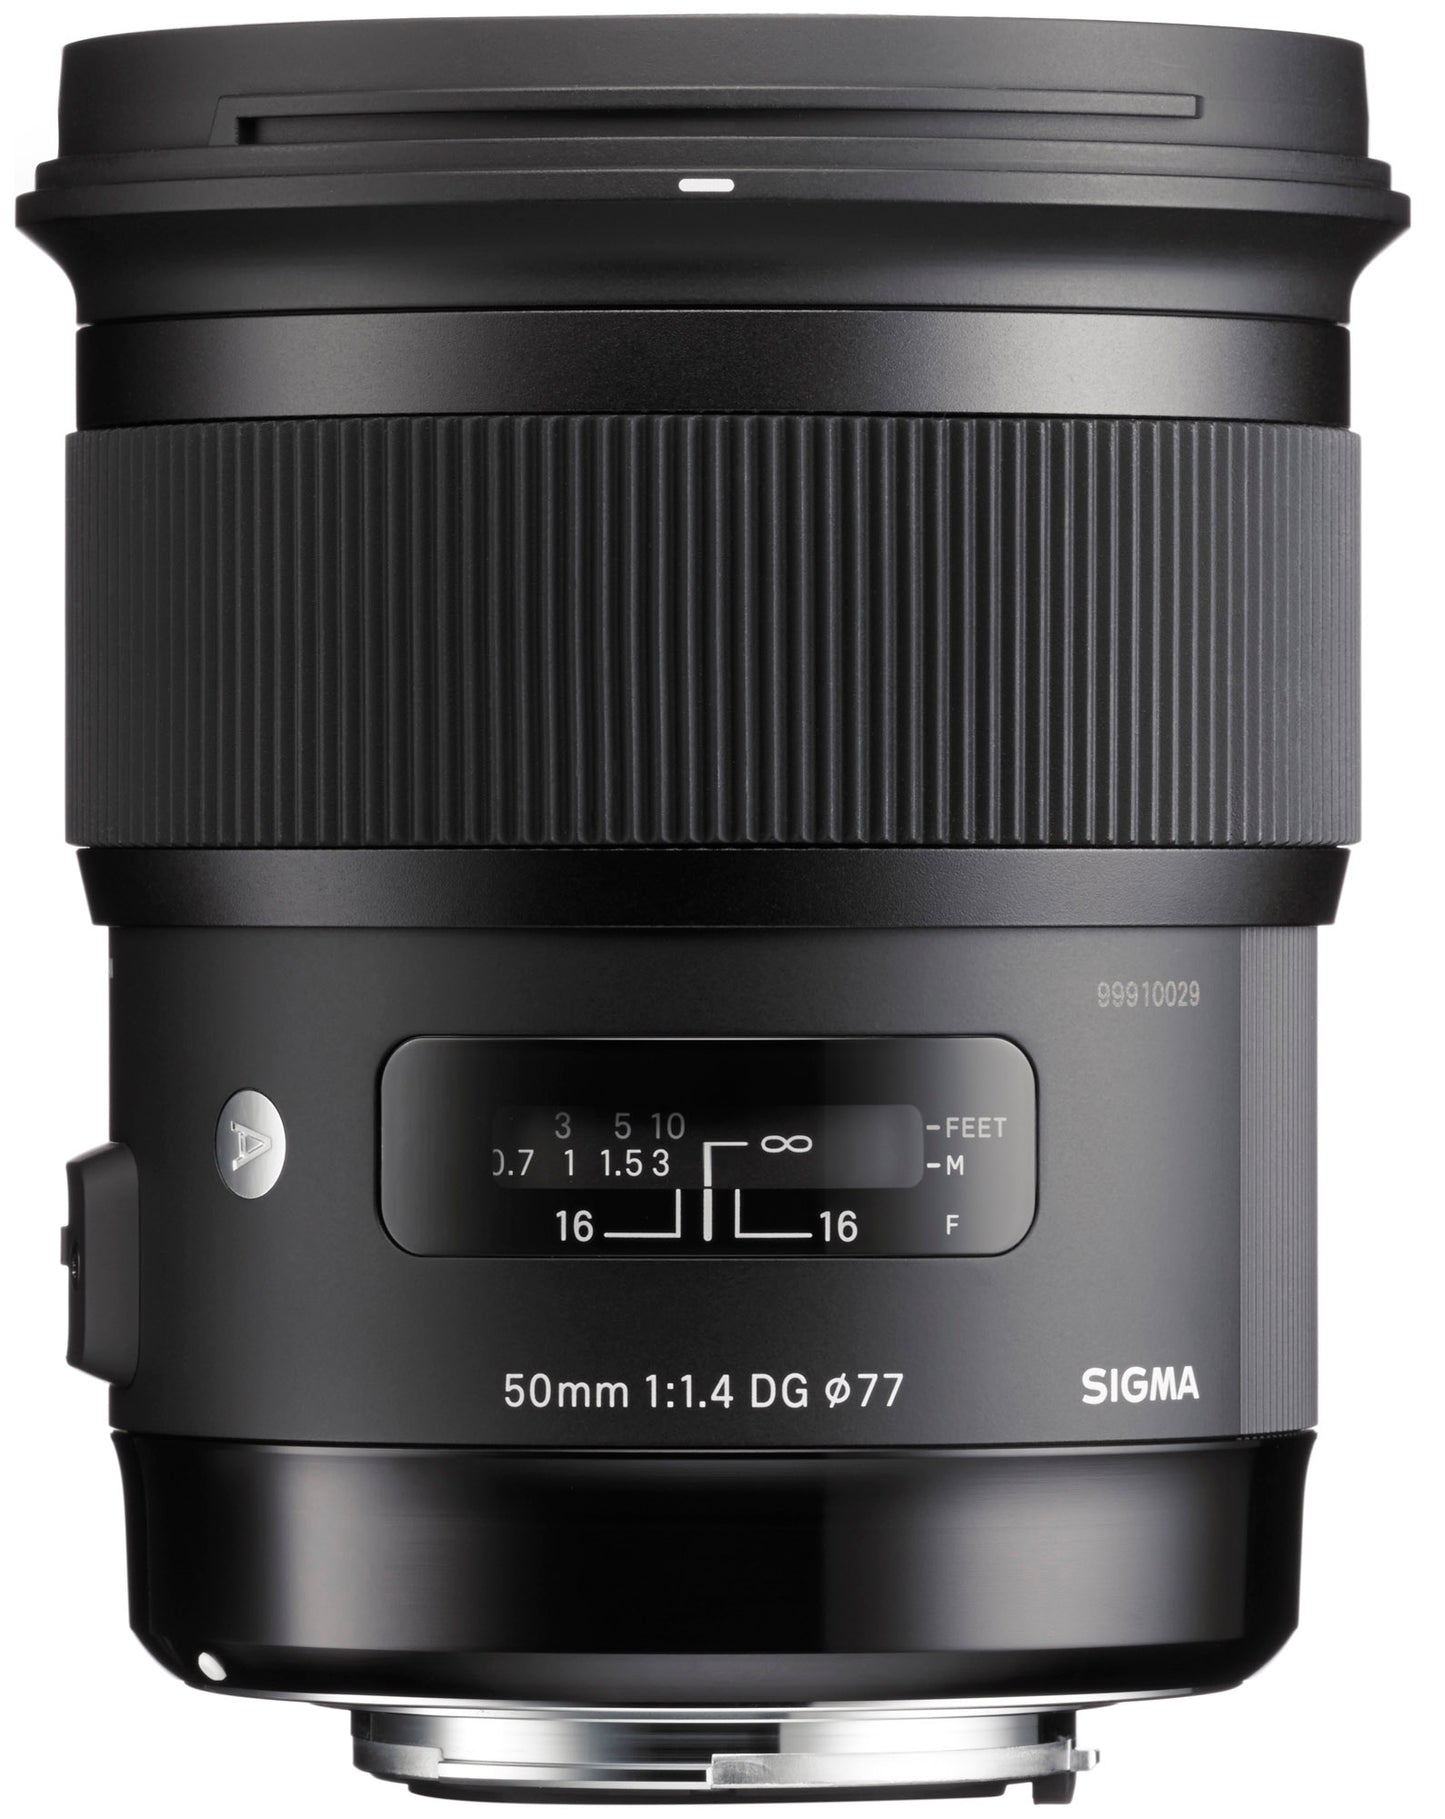 Sigma 50mm f/1.4 DG HSM Art Lens for Nikon mount